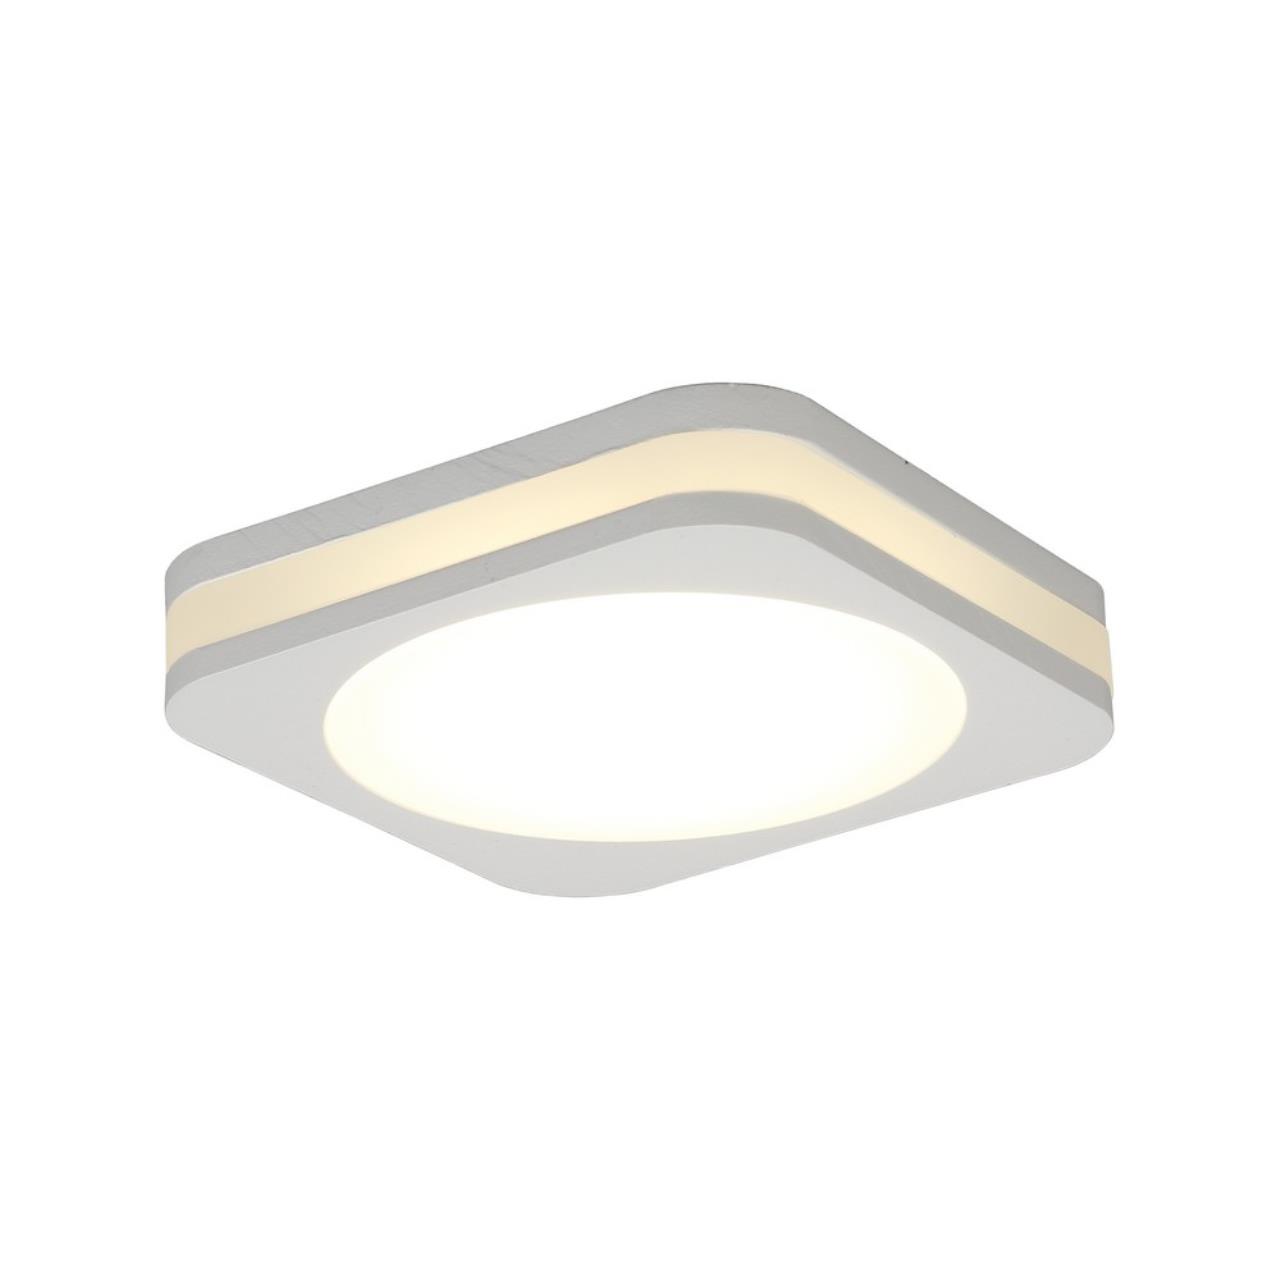 Светильник встраиваемый Aployt Marla, APL.0024.09.10, 10W, LED